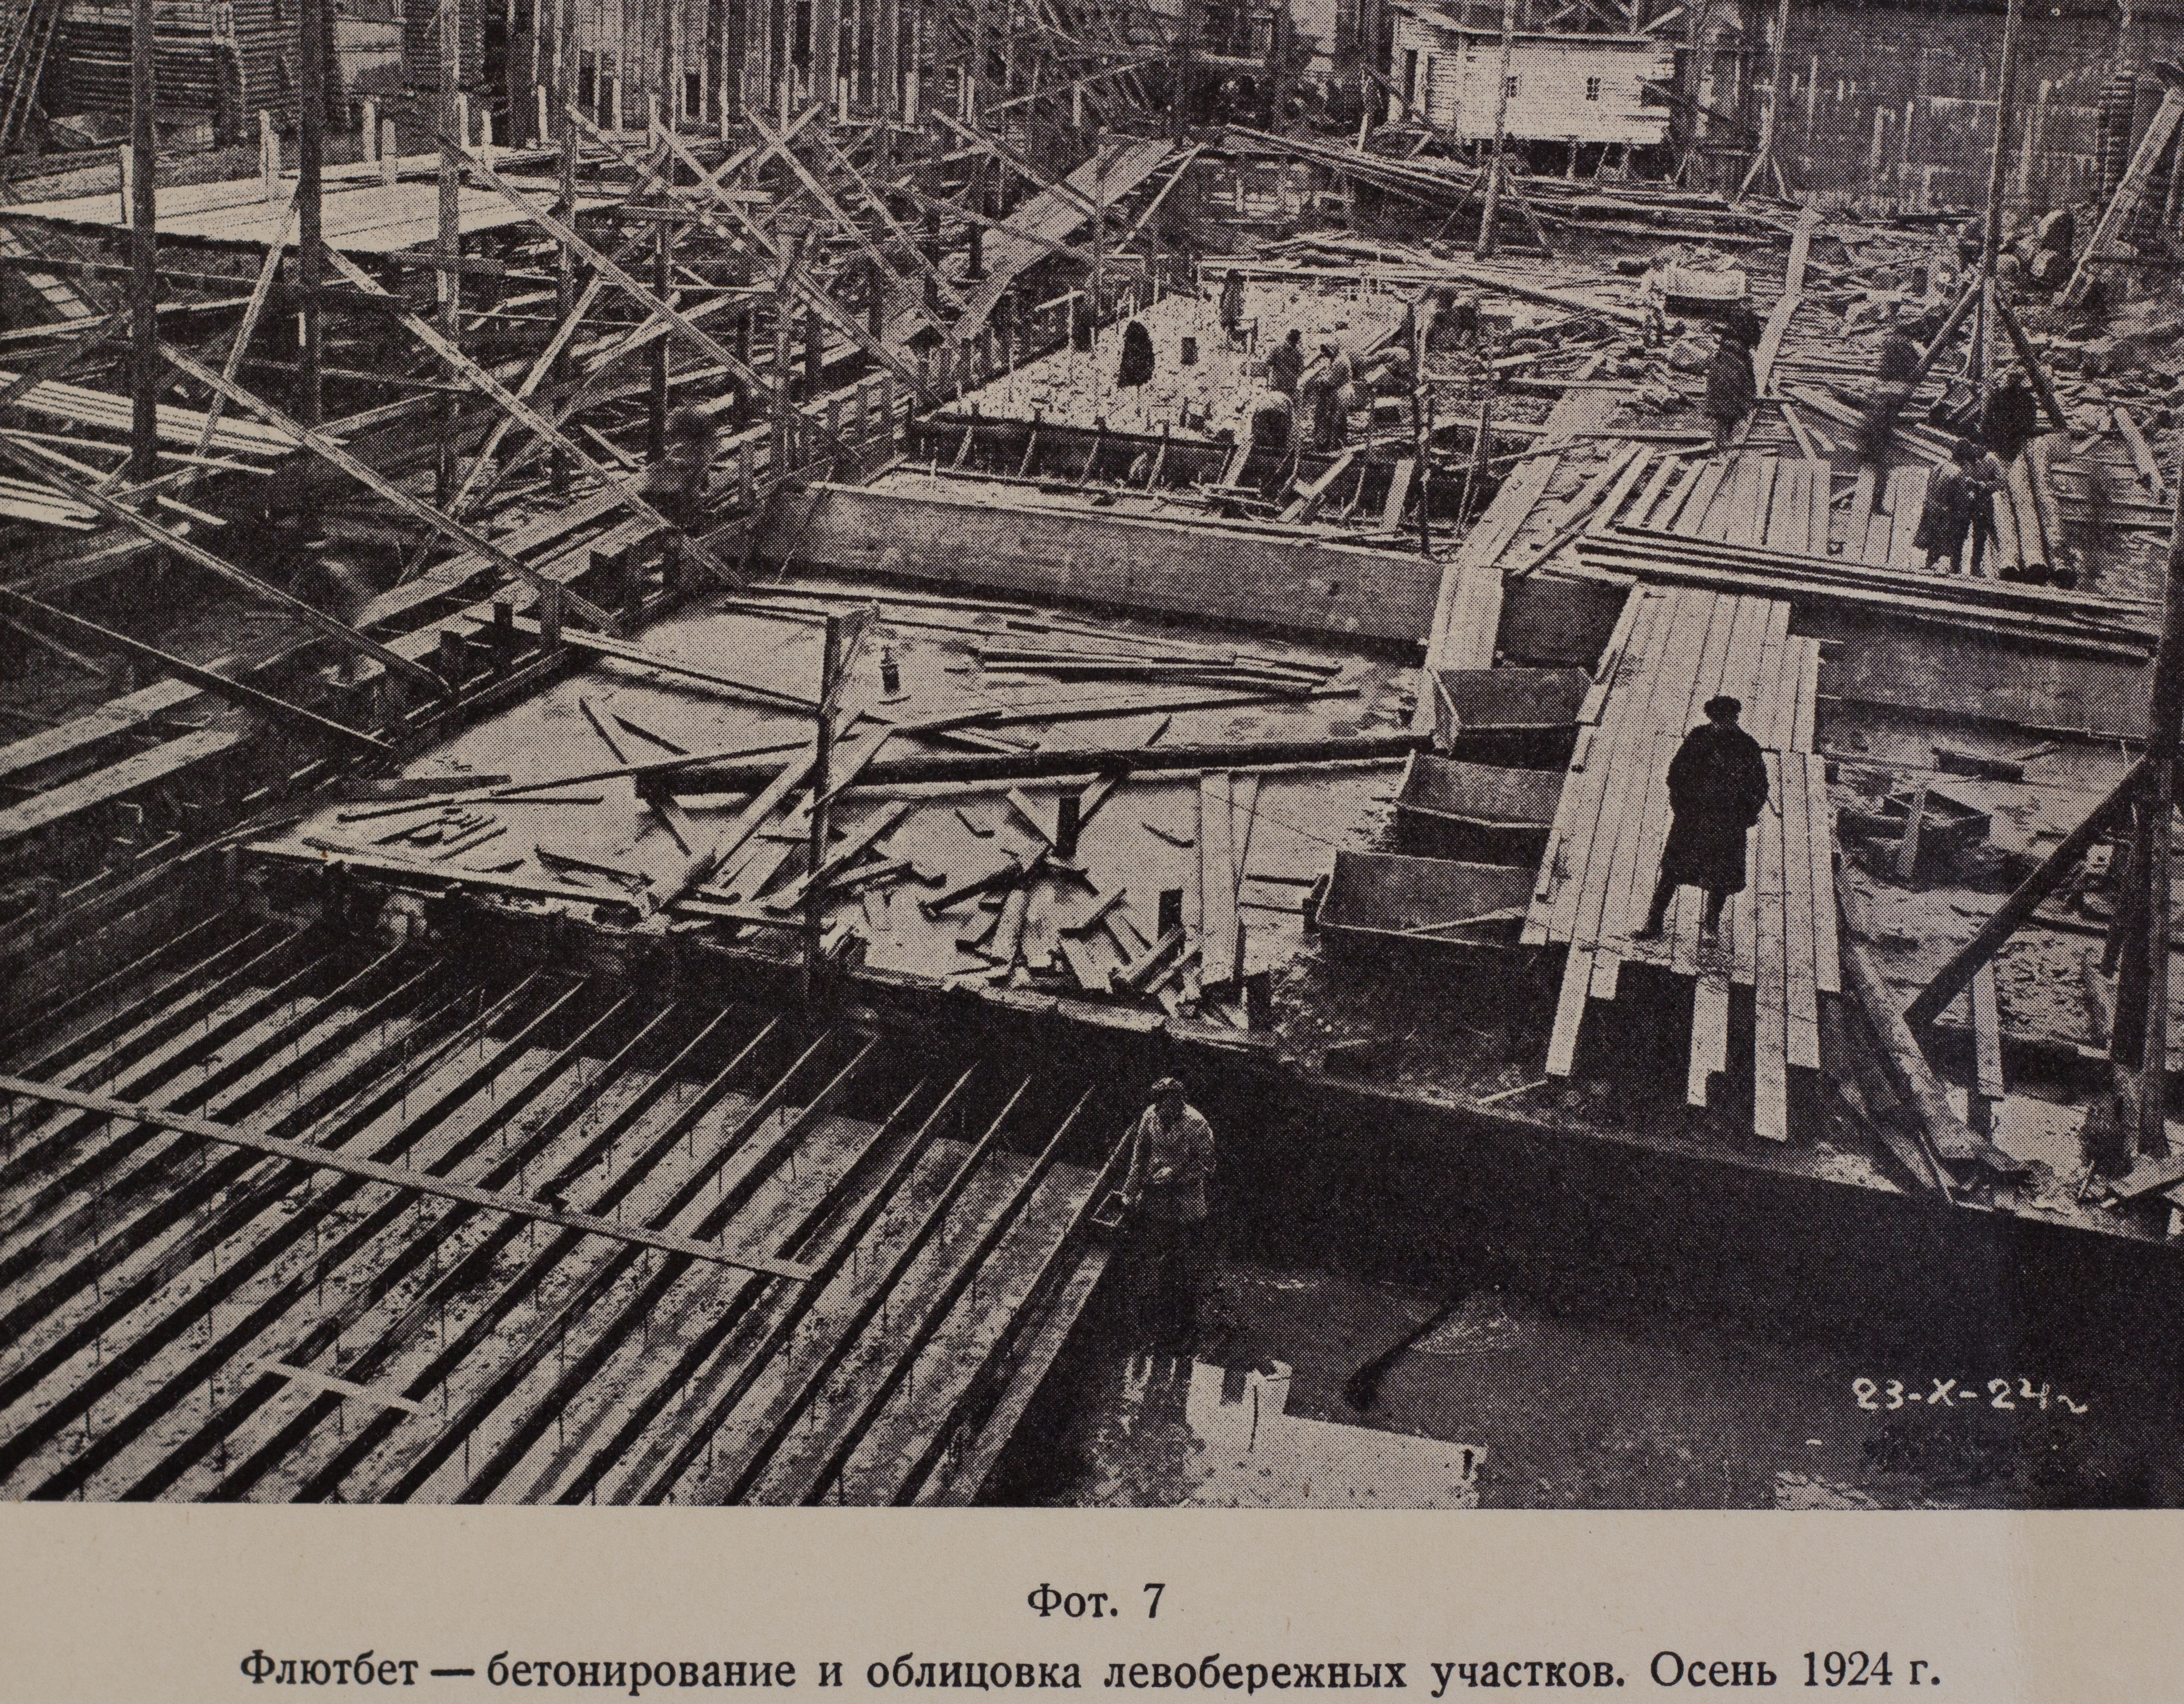 Флютбет — бетонирование и облицовка левобережных участков (осень, 1924 г.)